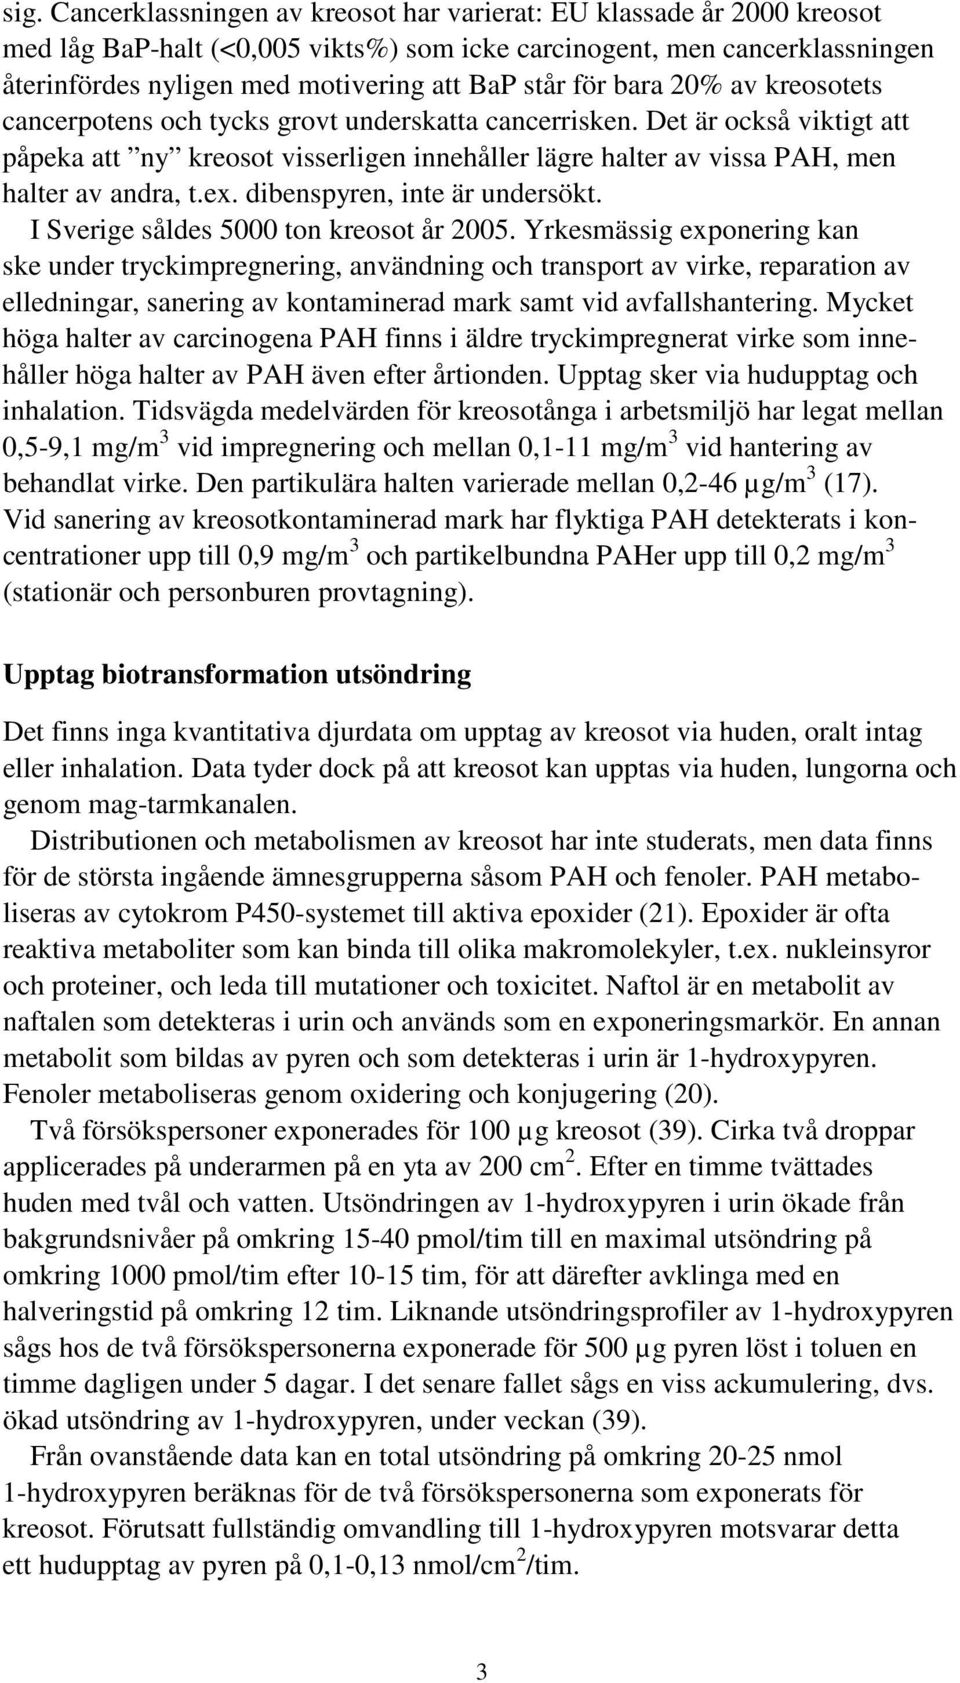 Det är också viktigt att påpeka att ny kreosot visserligen innehåller lägre halter av vissa PAH, men halter av andra, t.ex. dibenspyren, inte är undersökt. I Sverige såldes 5000 ton kreosot år 2005.